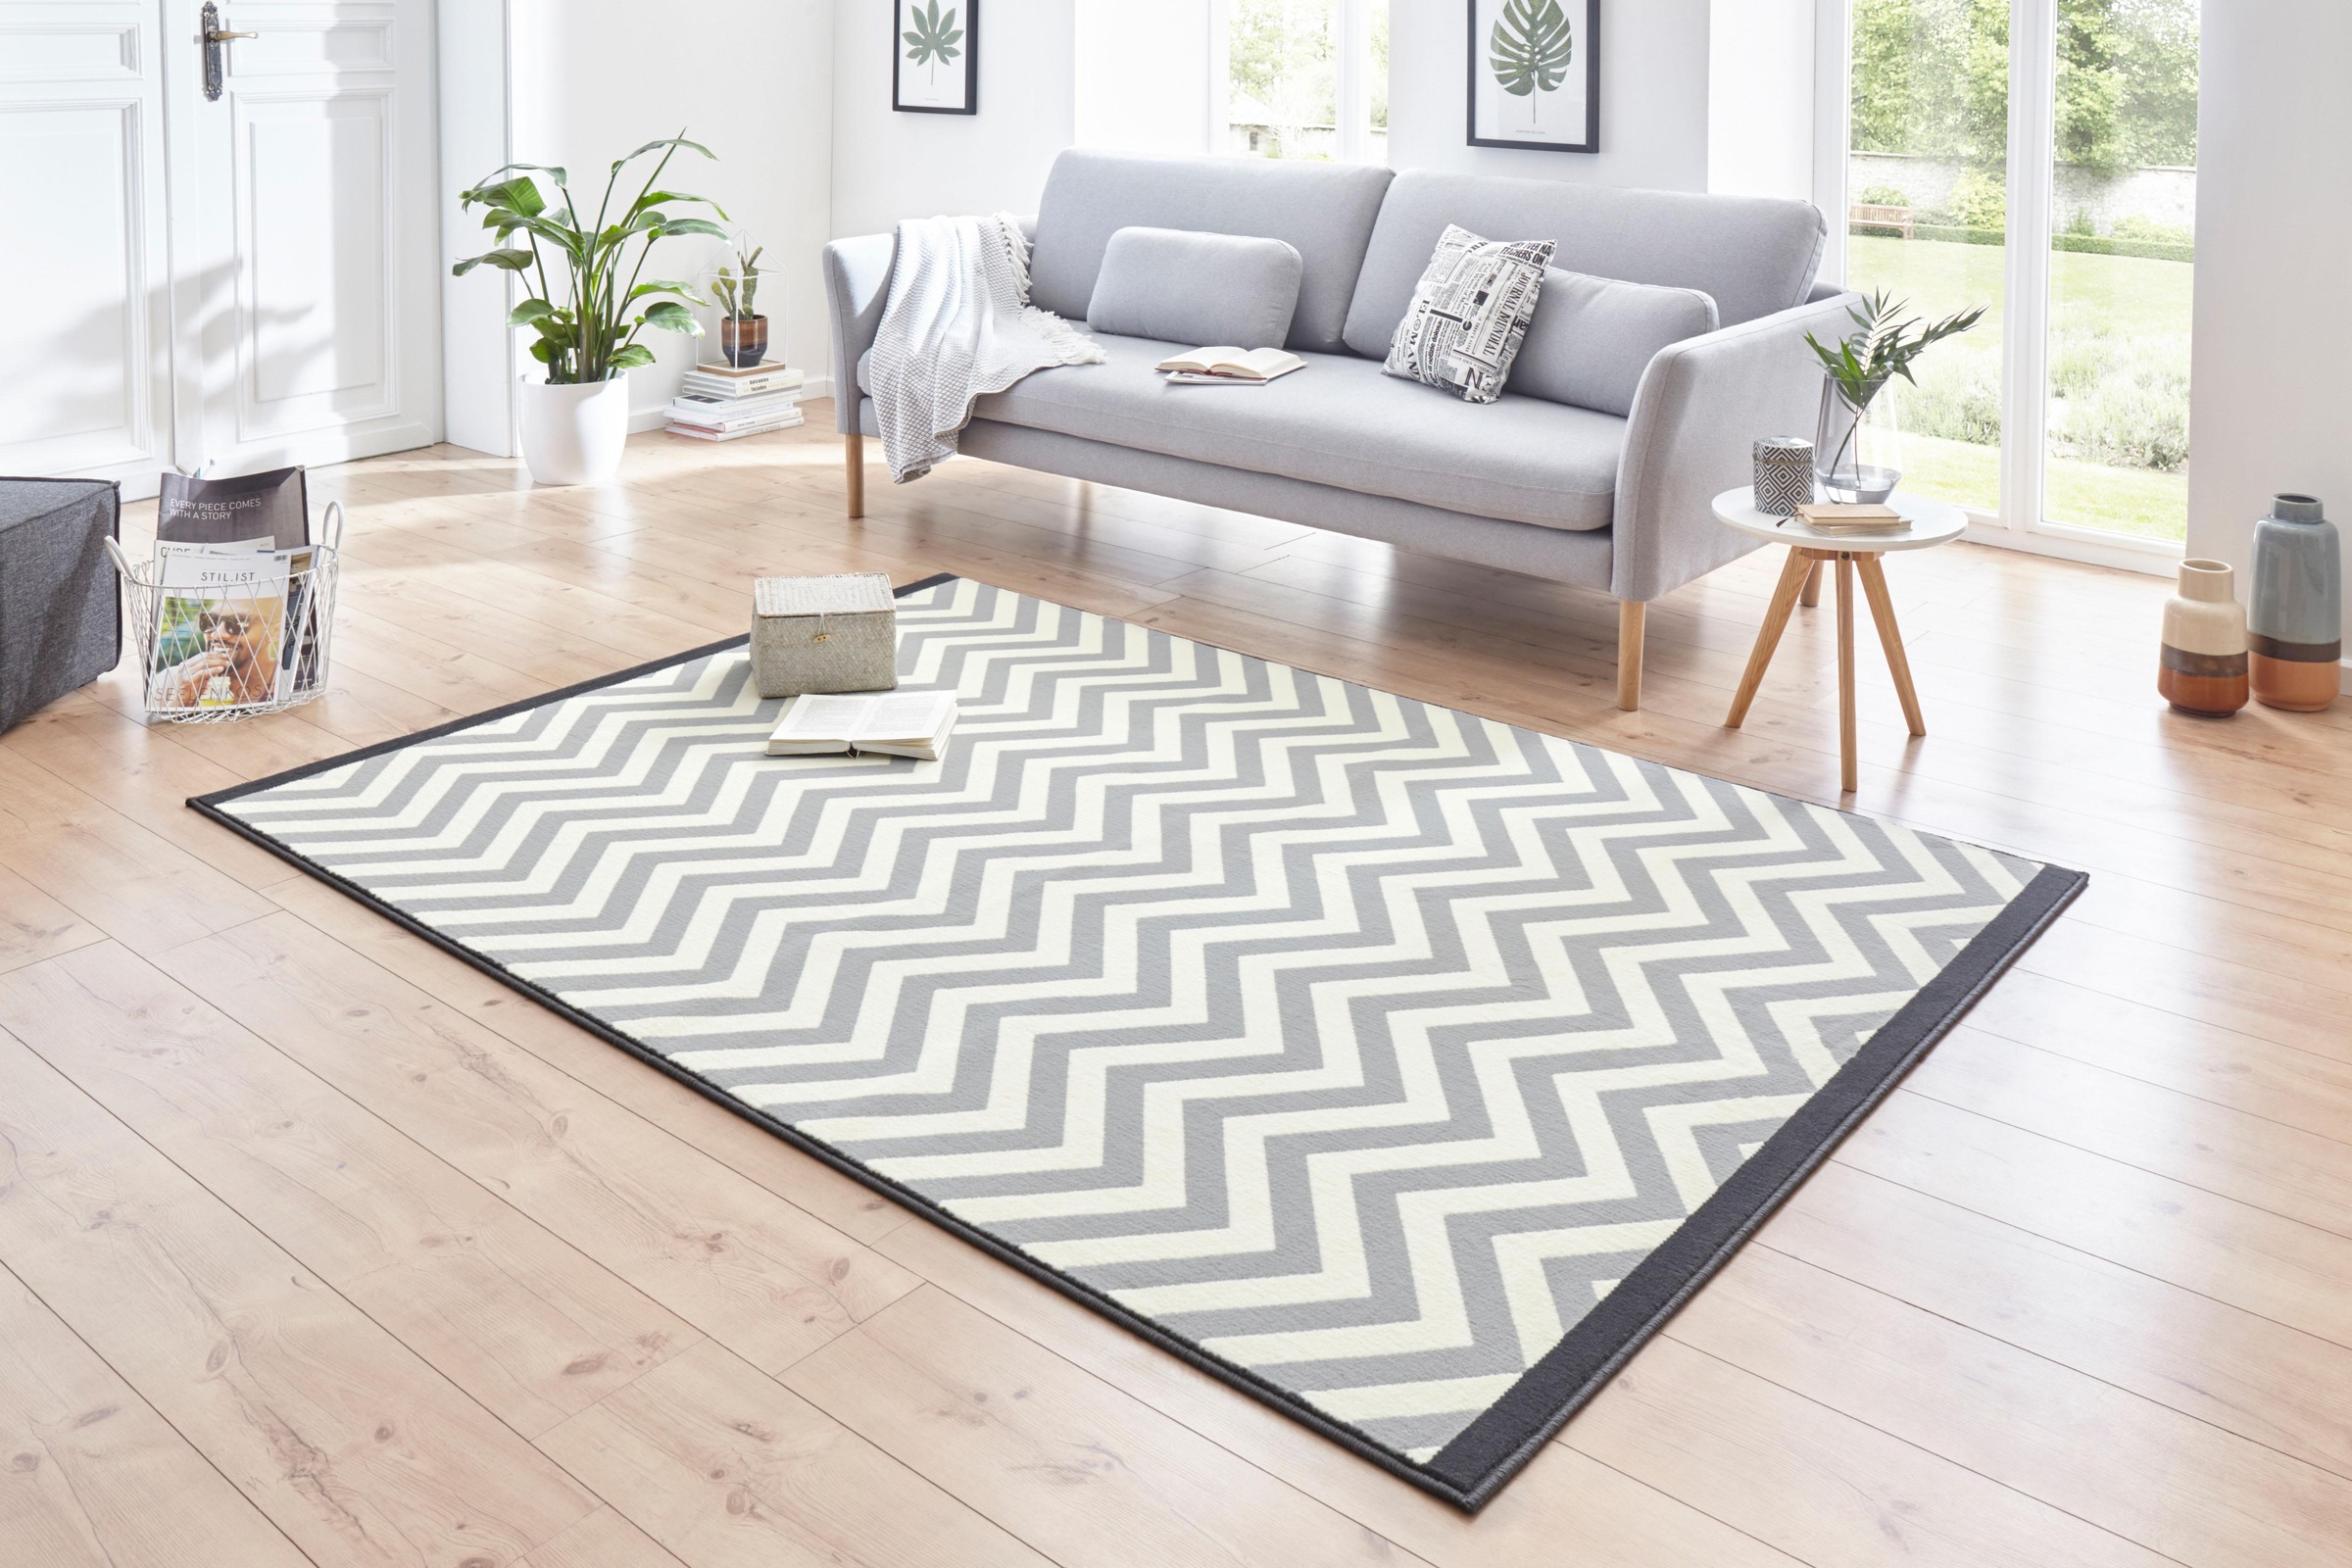 Hanse Home Panel - Kurzflor Teppich, Streifen Design, Wohnzimmer